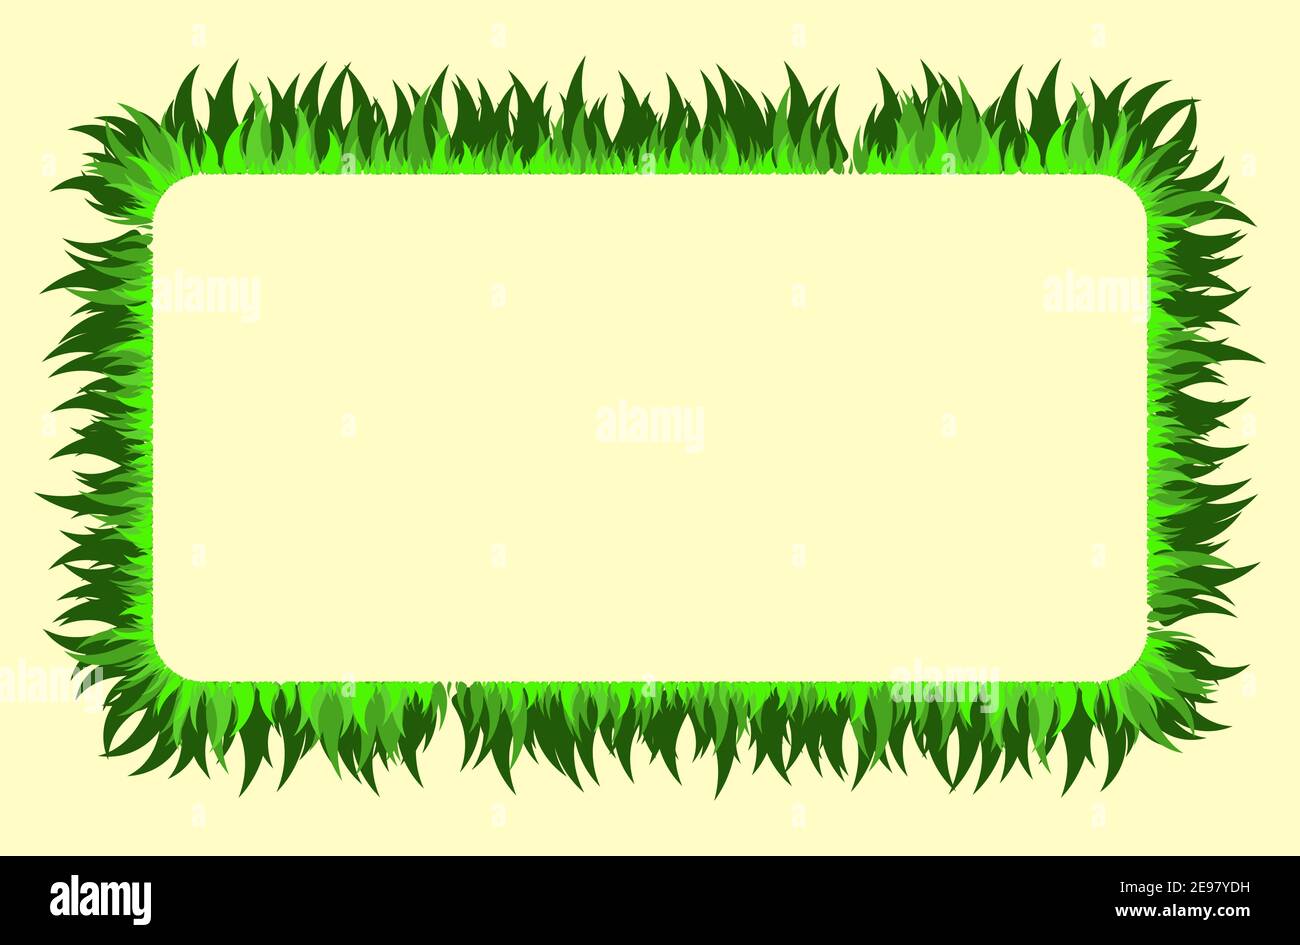 Grass Rechteck Rahmen mit Kopierer Platz. Rasenrand mit grünem Blattdesign. Vektorgrafik Hintergrund. Stock Vektor